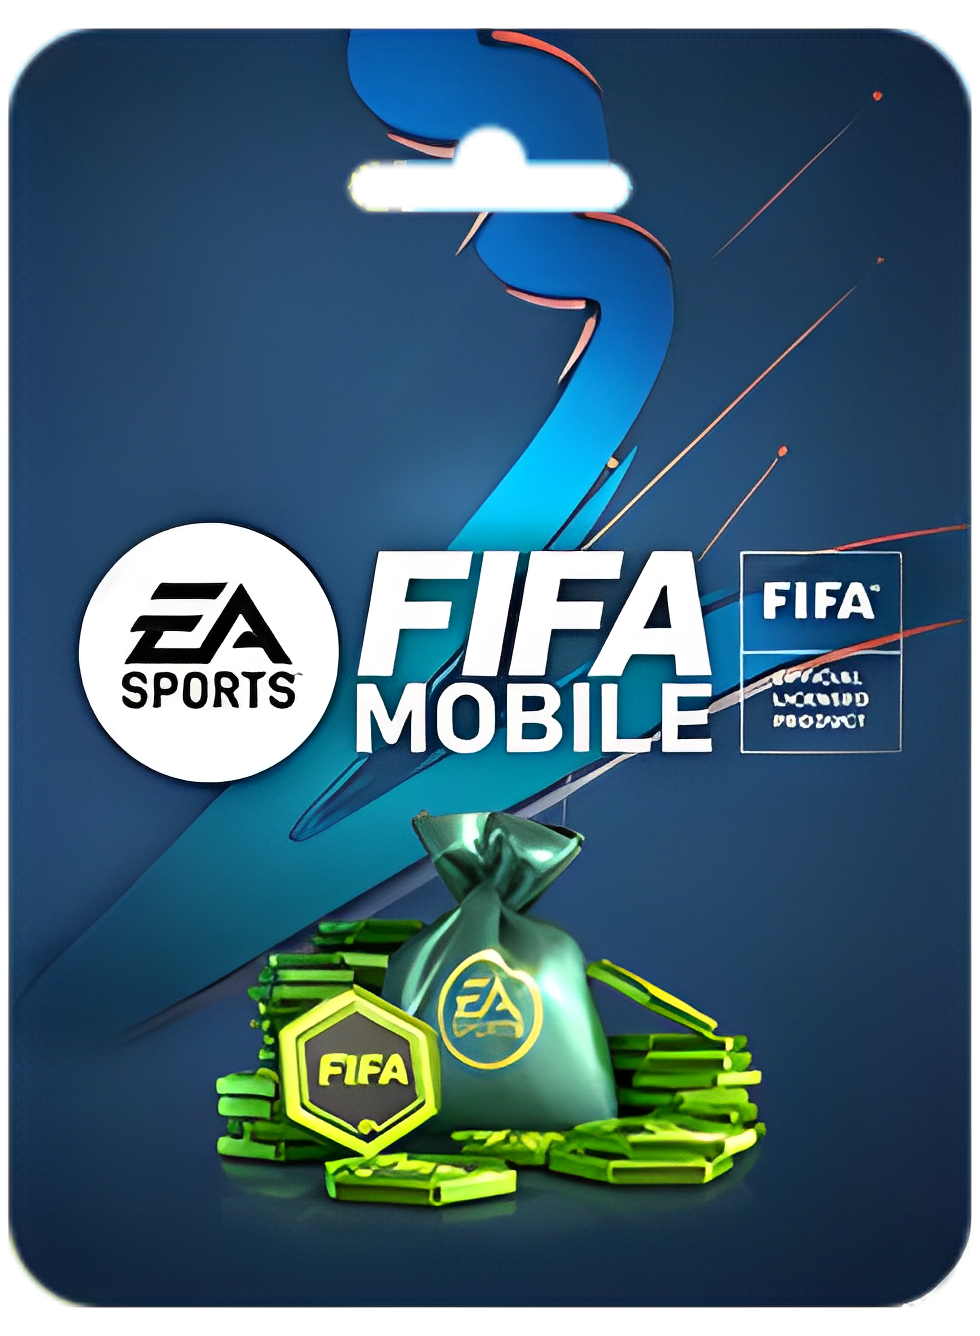 FIFA MOBILE